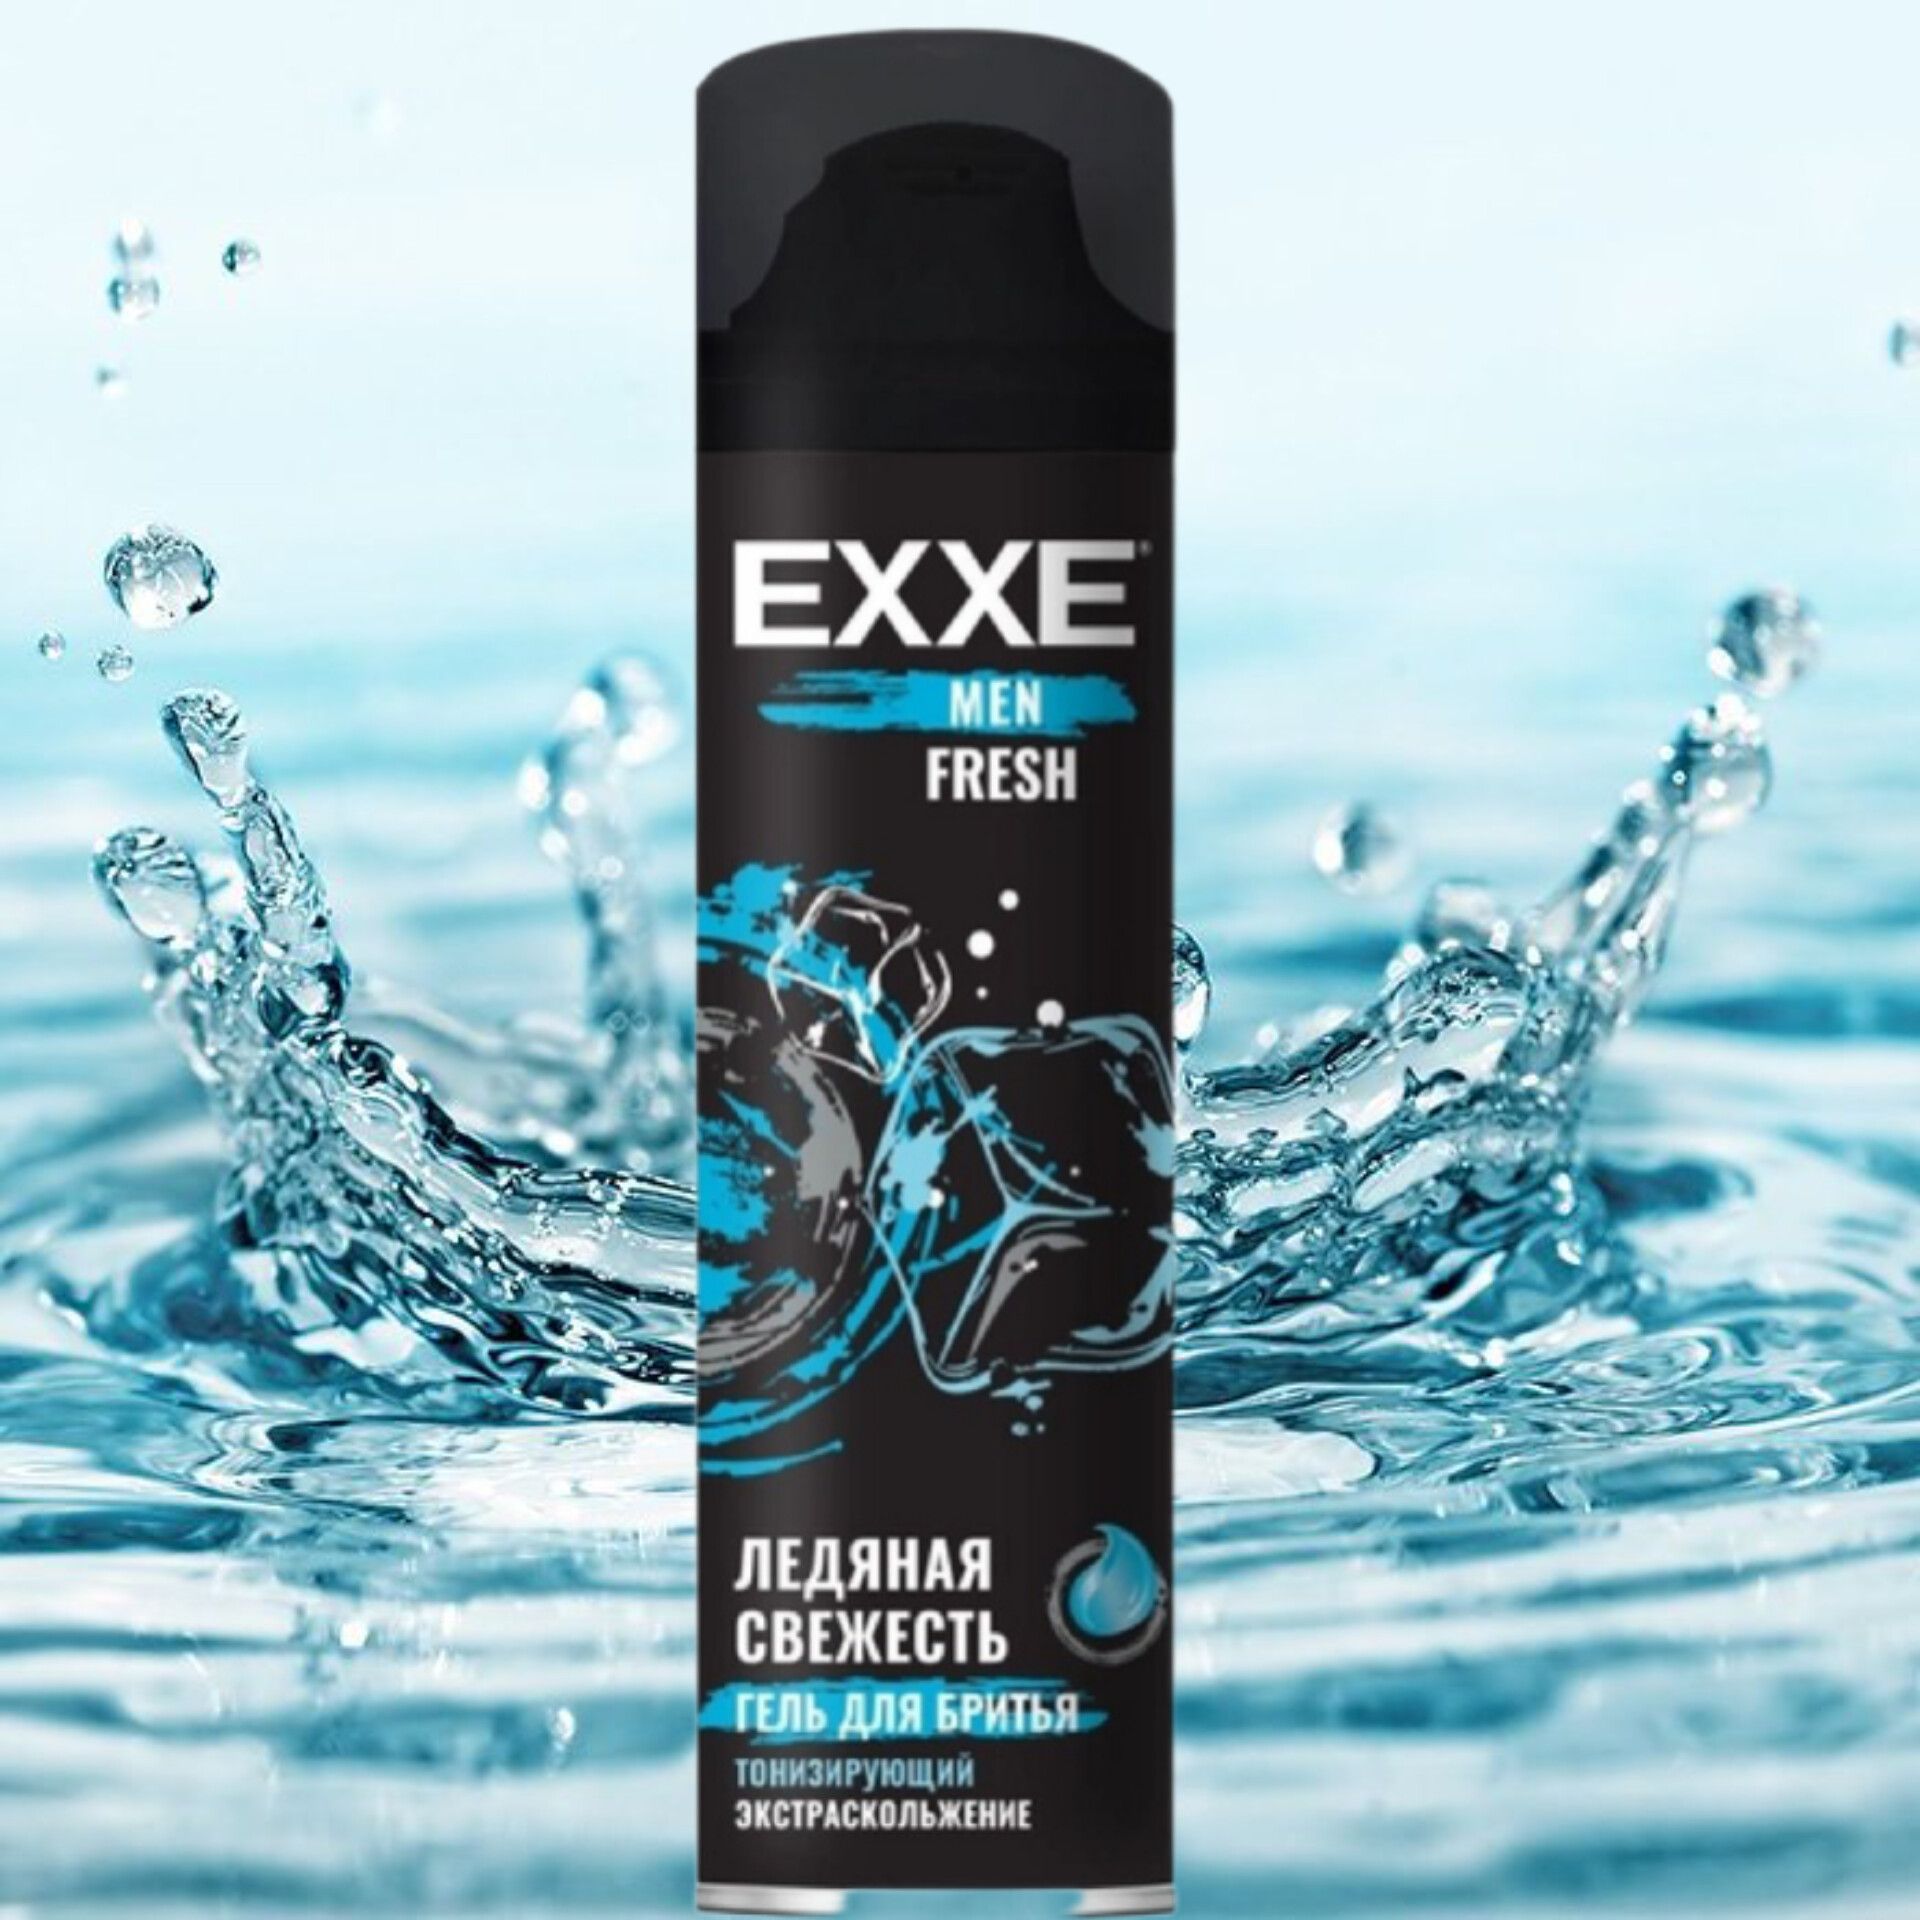 Exxe men гель для бритья восстанавливающий Energy, 200 мл. Exxe men шампунь д/всех типов волос "тонизирующий" Fresh, 400 мл. Пена д/бритья "Exxe Sport " 200мл тонизирующая. Exxe шампунь мужской.